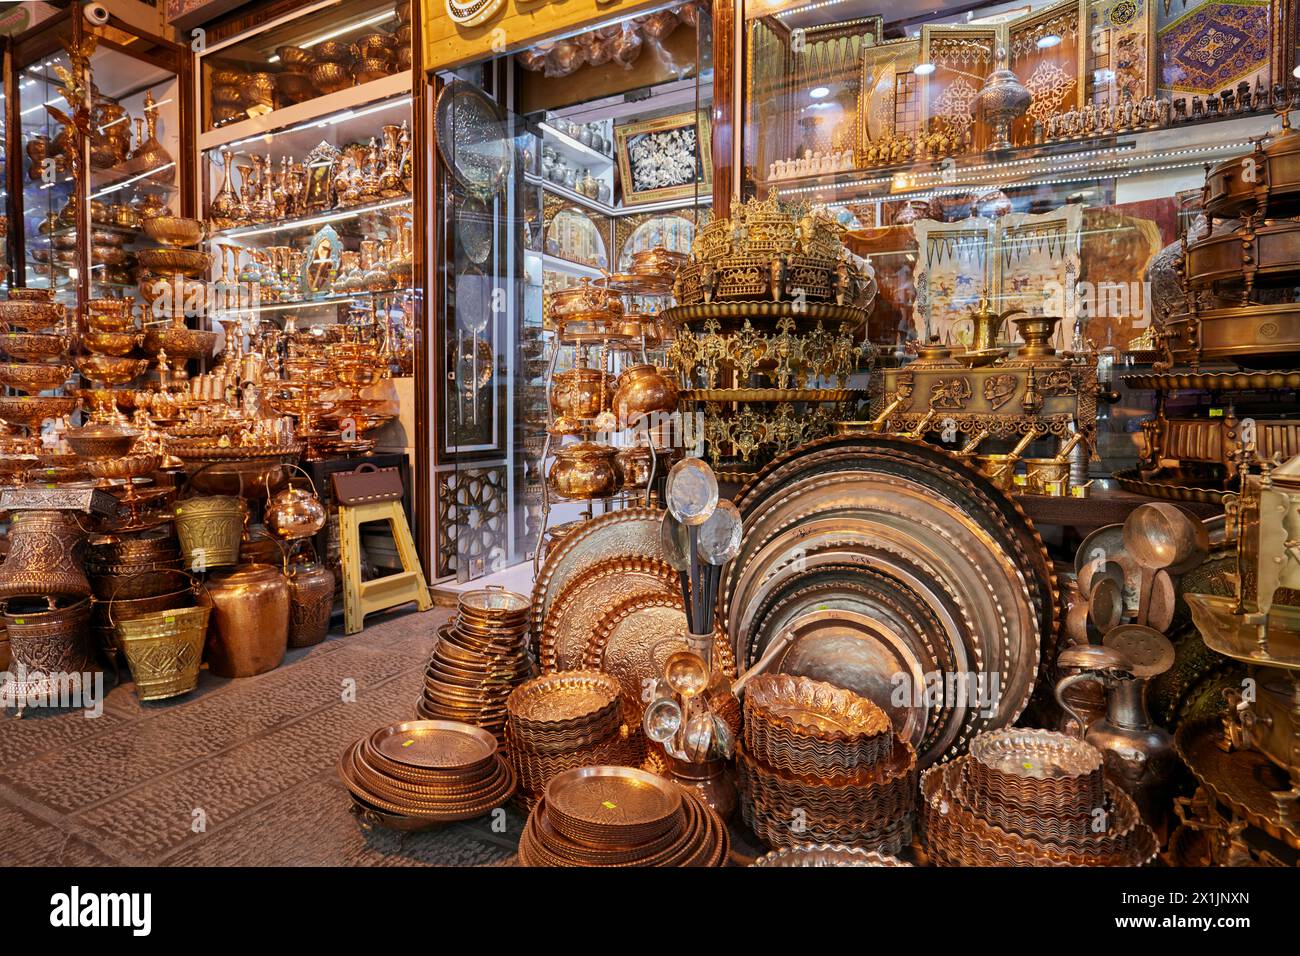 Handgefertigte Kupferutensilien und dekorative Gegenstände werden in einem Kunsthandwerksladen in Isfahan, Iran, ausgestellt. Stockfoto